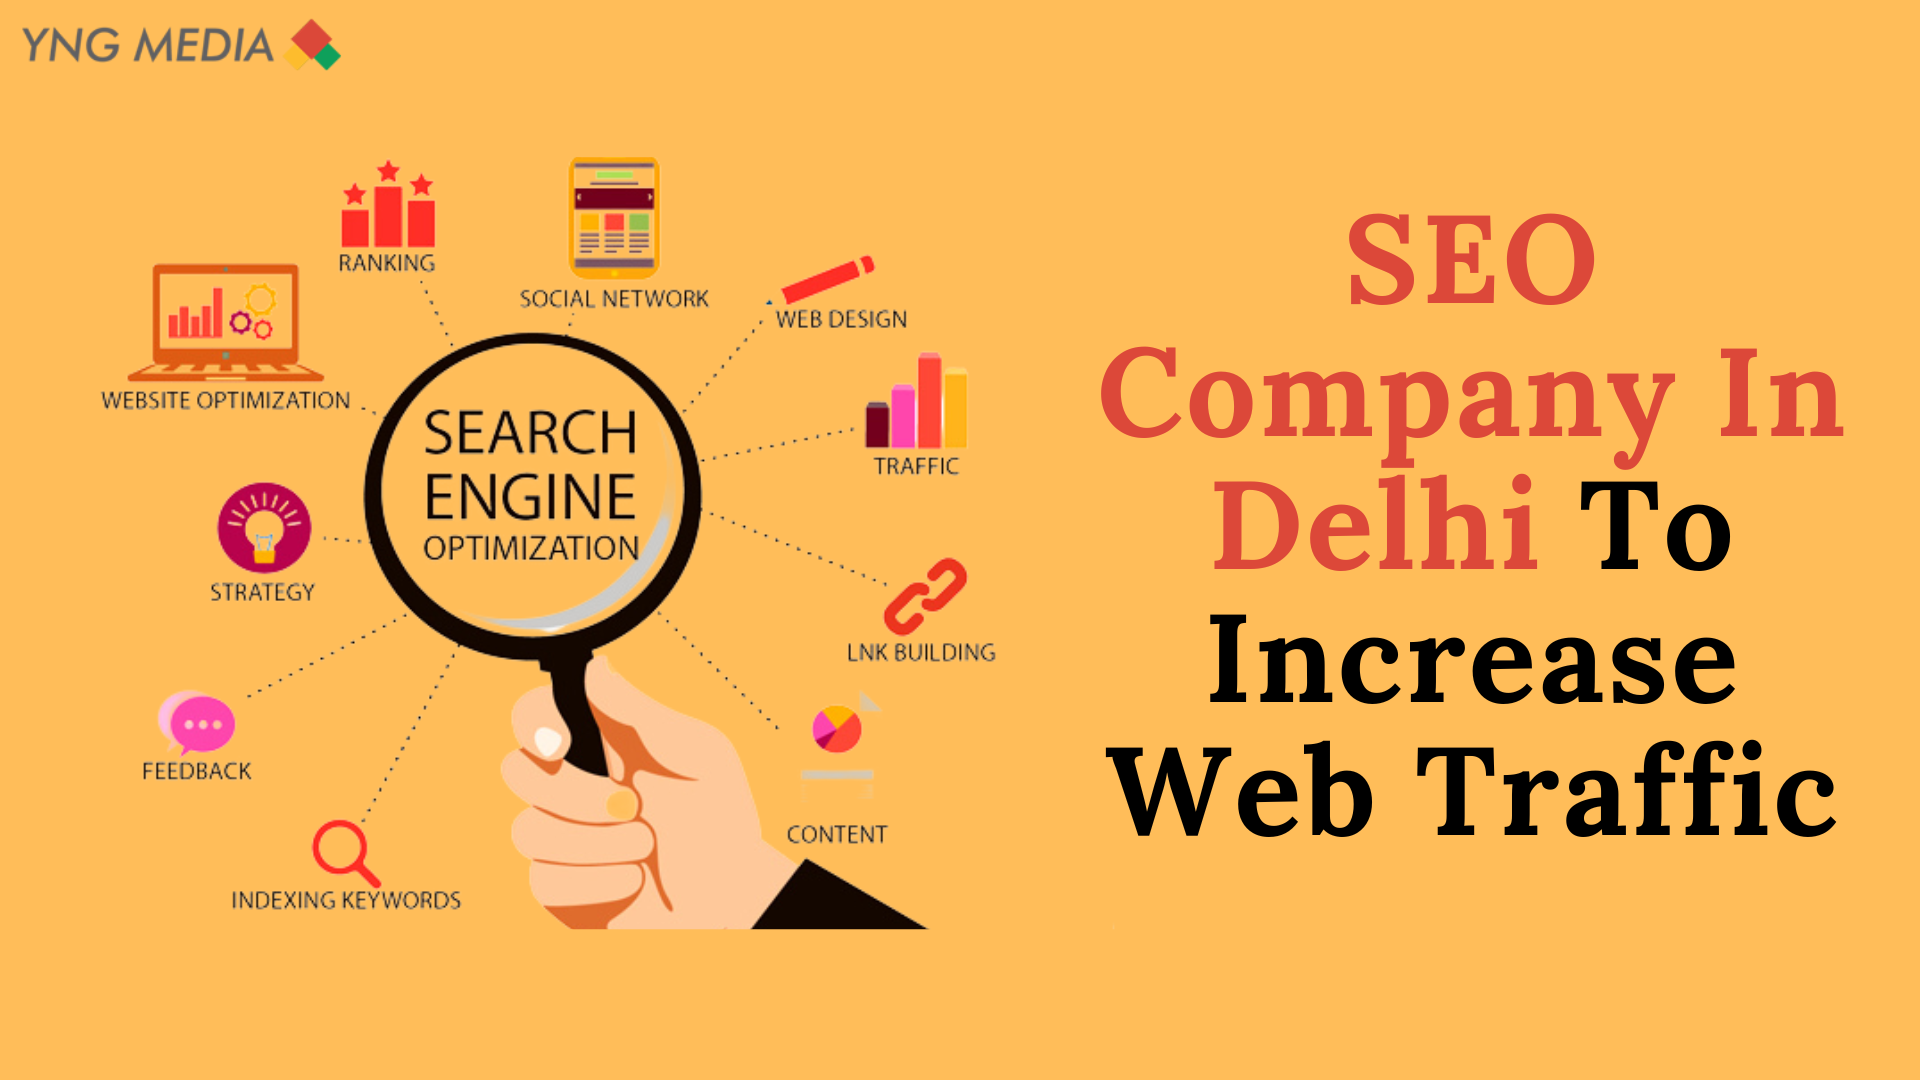 SEO Company In Delhi To Increase Web Traffic